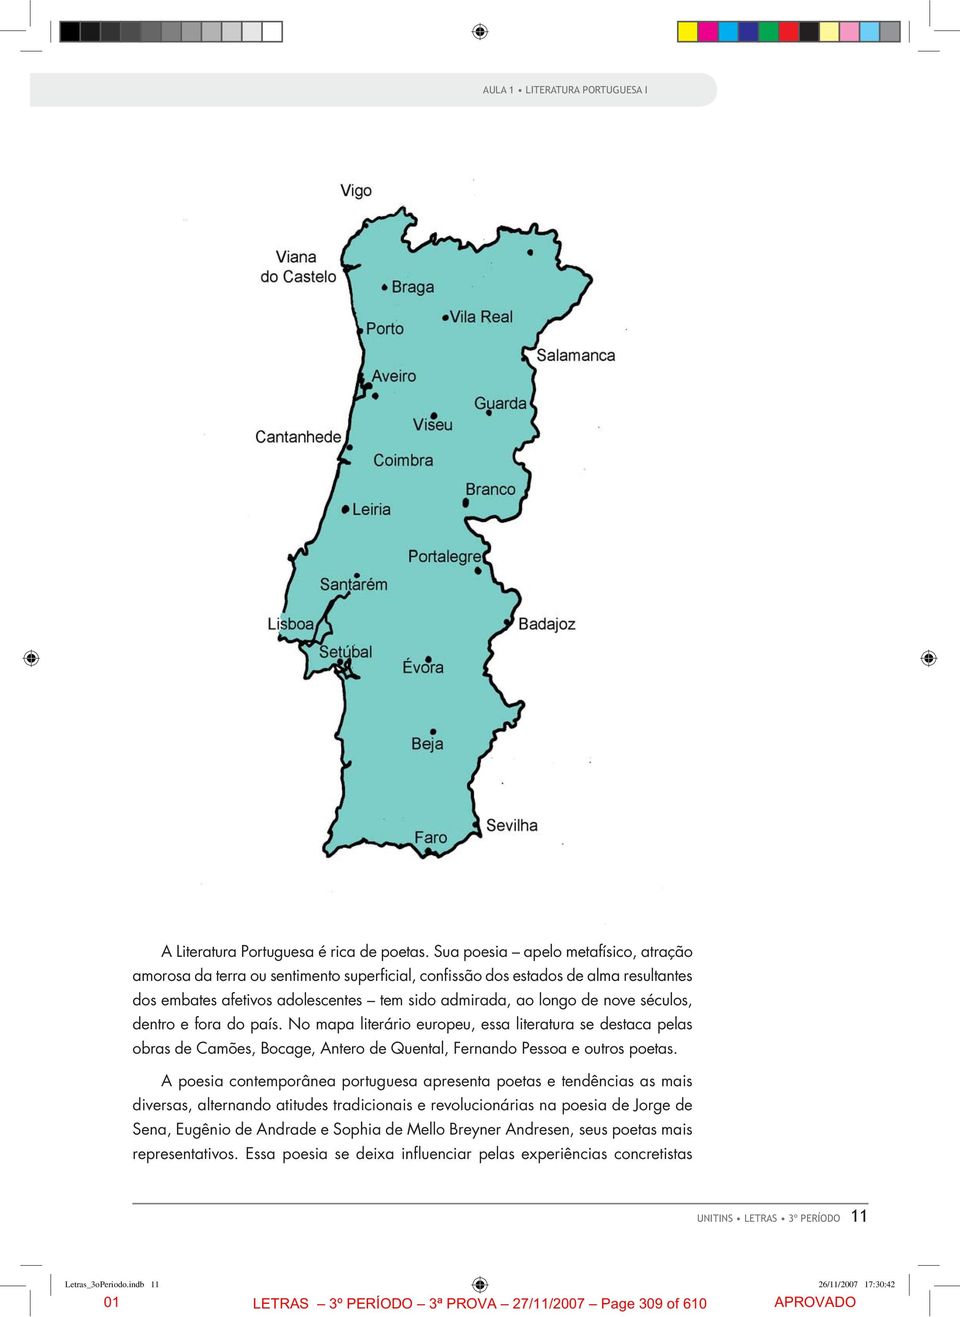 séculos, dentro e fora do país. No mapa literário europeu, essa literatura se destaca pelas obras de Camões, Bocage, Antero de Quental, Fernando Pessoa e outros poetas.